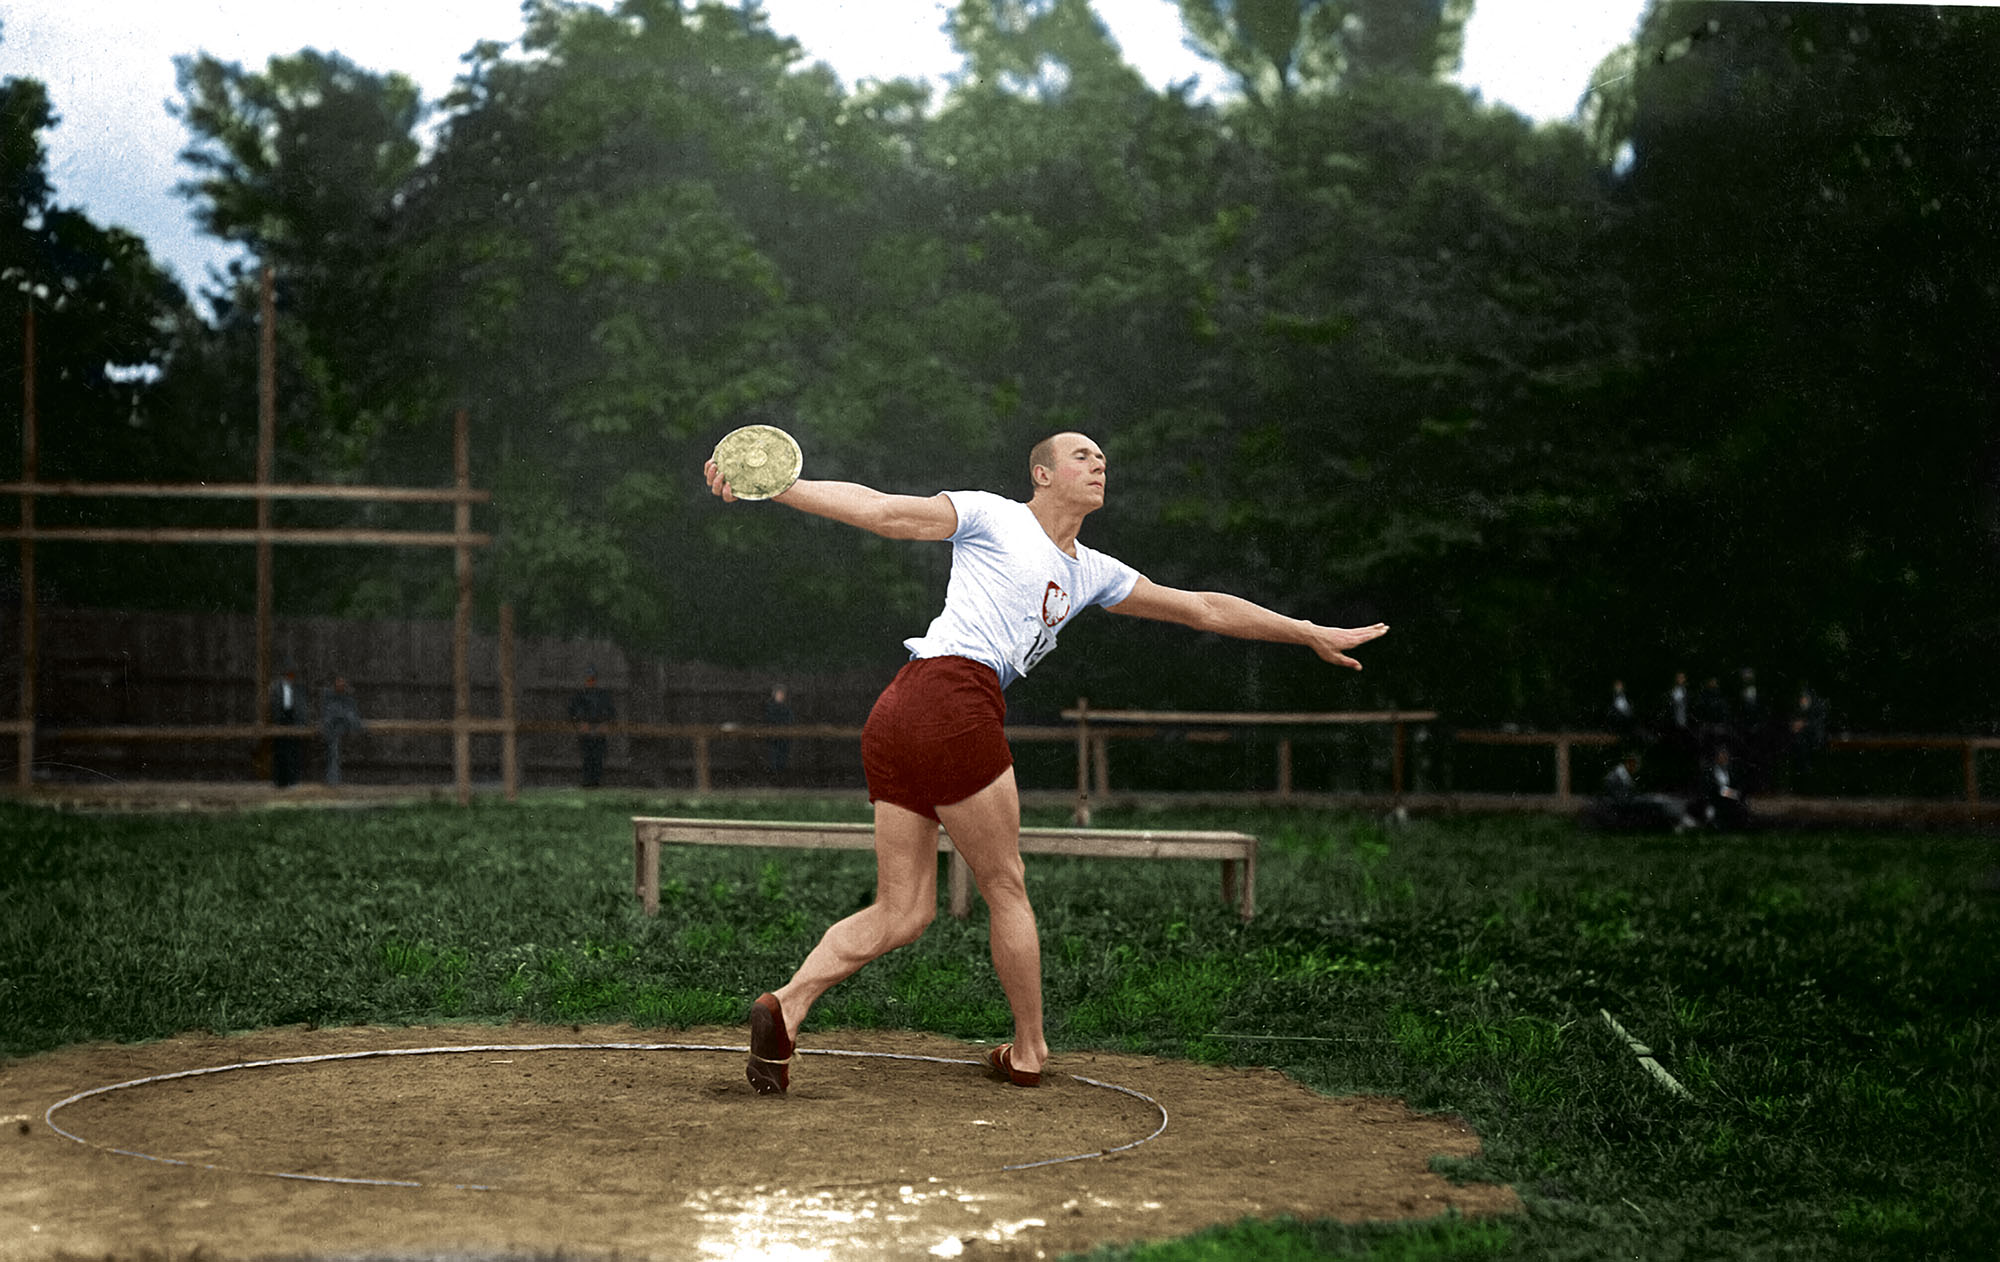 Trening Józefa Barana przed igrzyskami olimpijskimi w Amsterdamie, 1928 r. Źródło: archiwum rodzinne Artura Bilewskiego